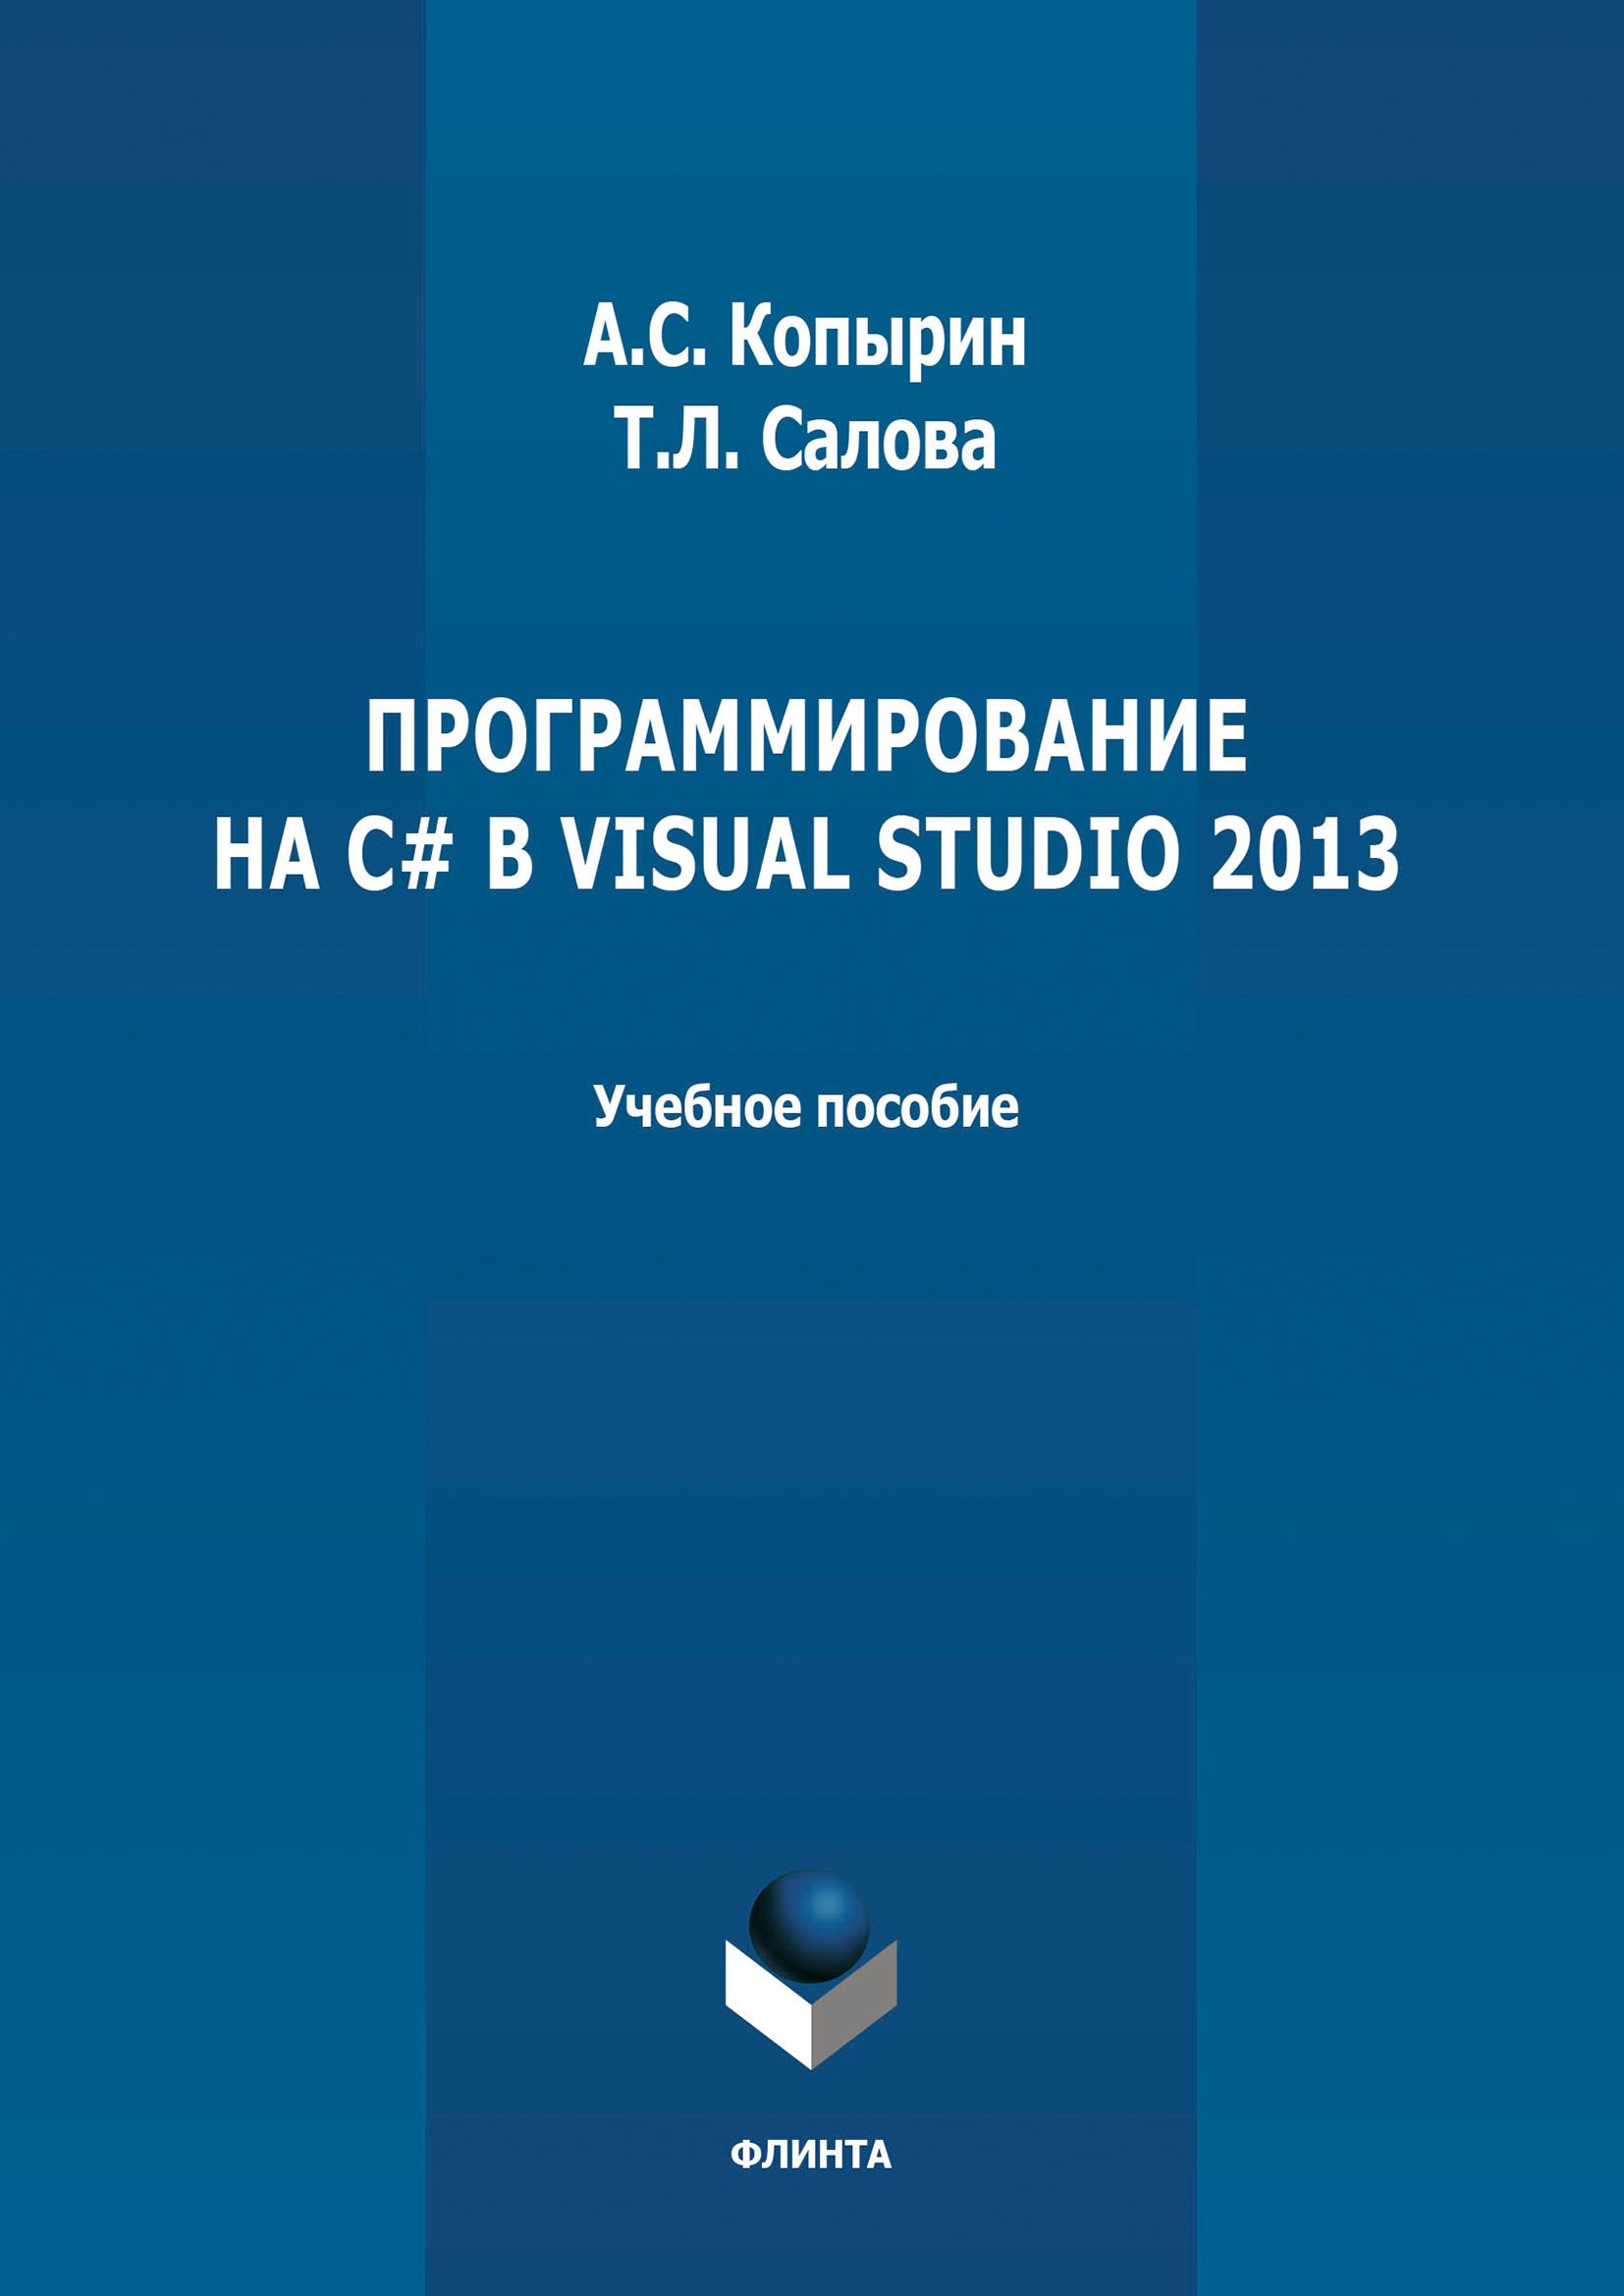 Книга  Программирование на С# в Visual Studio 2013 созданная А. С. Копырин, Т. Л. Салова может относится к жанру программирование, учебники и пособия для вузов. Стоимость электронной книги Программирование на С# в Visual Studio 2013 с идентификатором 66429770 составляет 65.00 руб.